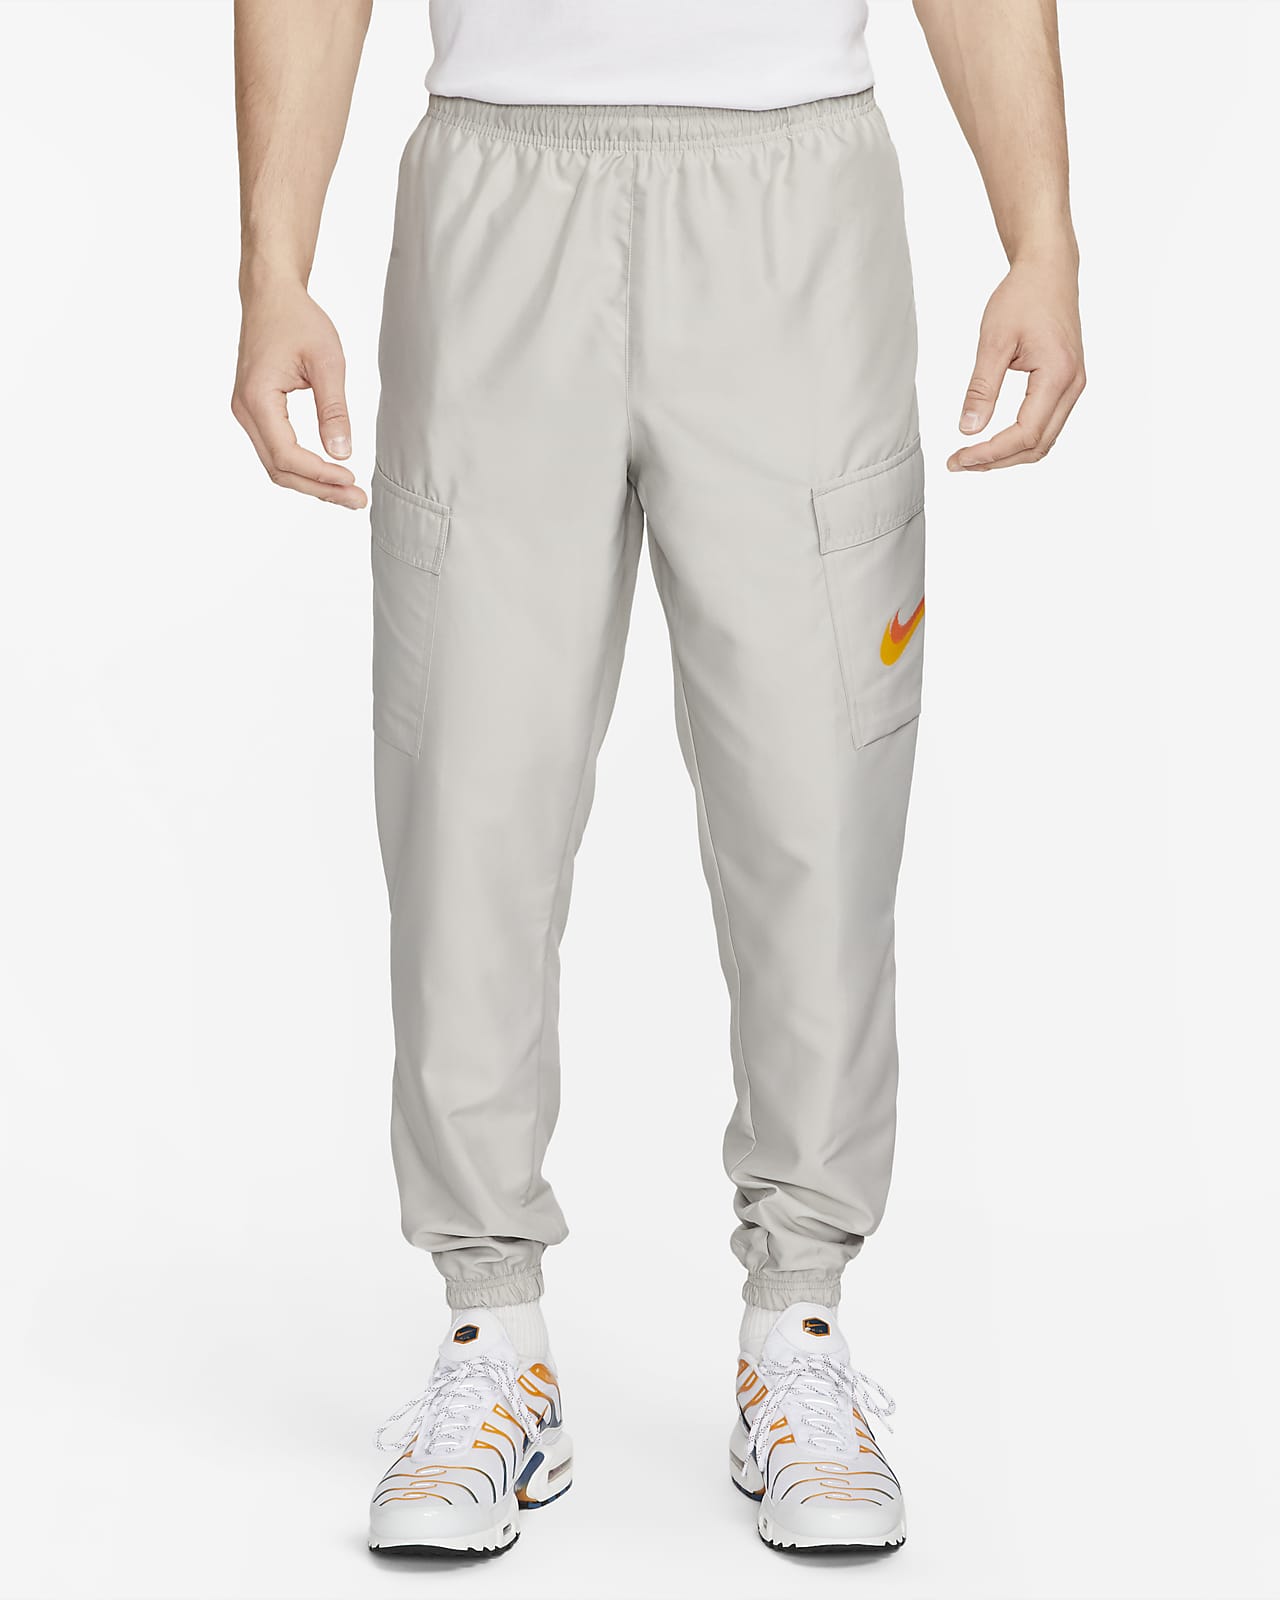 Nike Sportswear Woven Trousers. LU